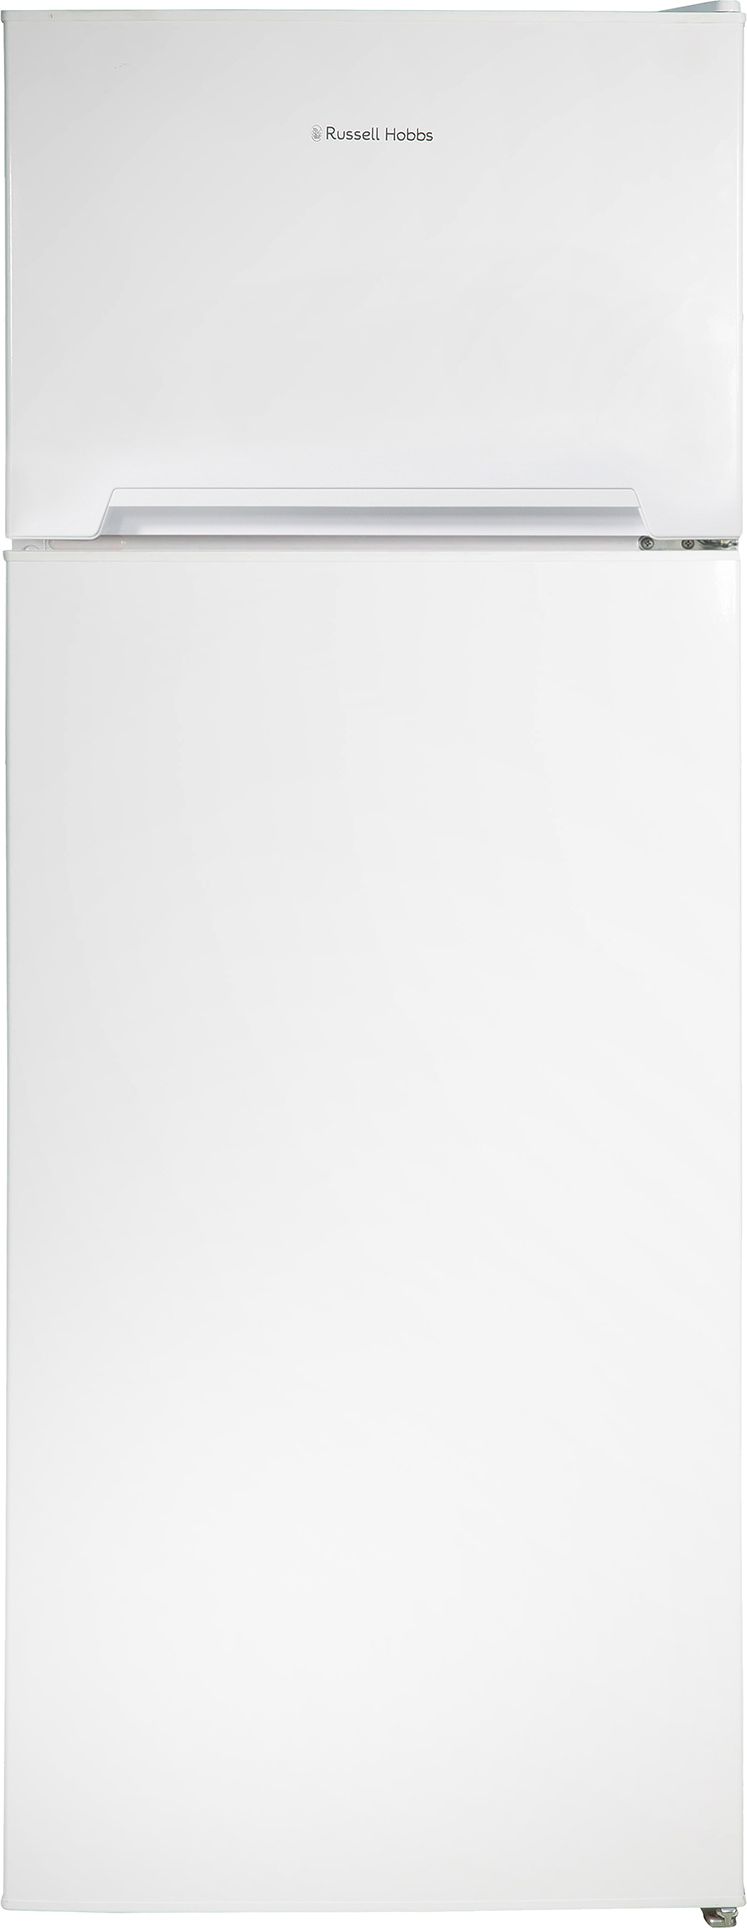 Russell Hobbs RH144TMFF54 80/20 Fridge Freezer - White - F Rated, White